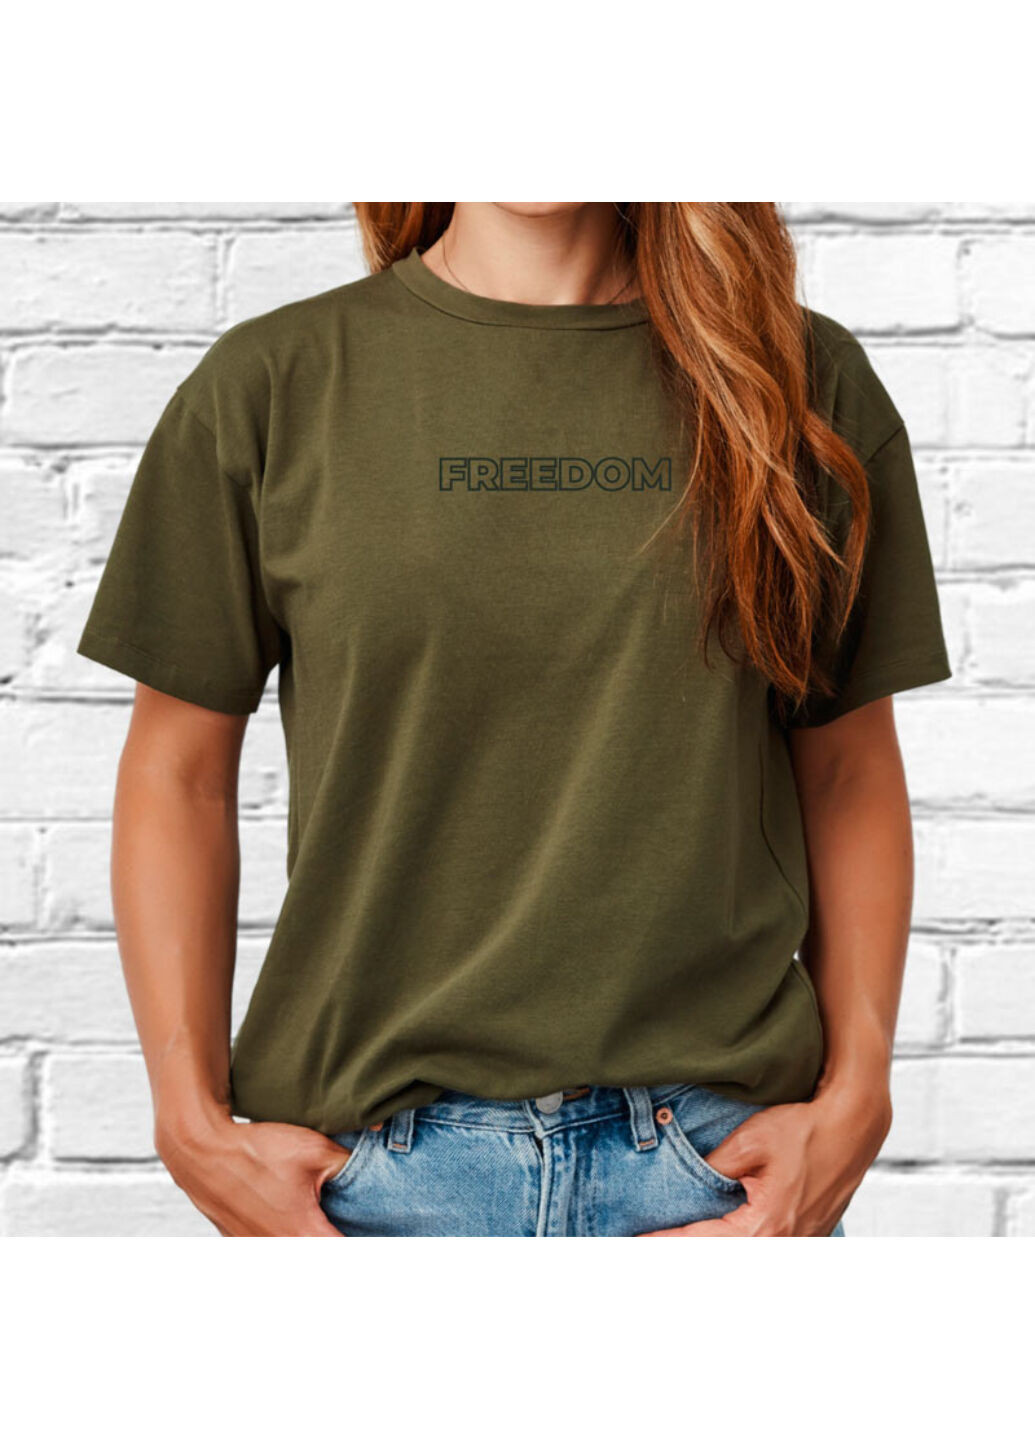 Хакі (оливкова) футболка з вишивкою freedom жіноча millytary green xl No Brand